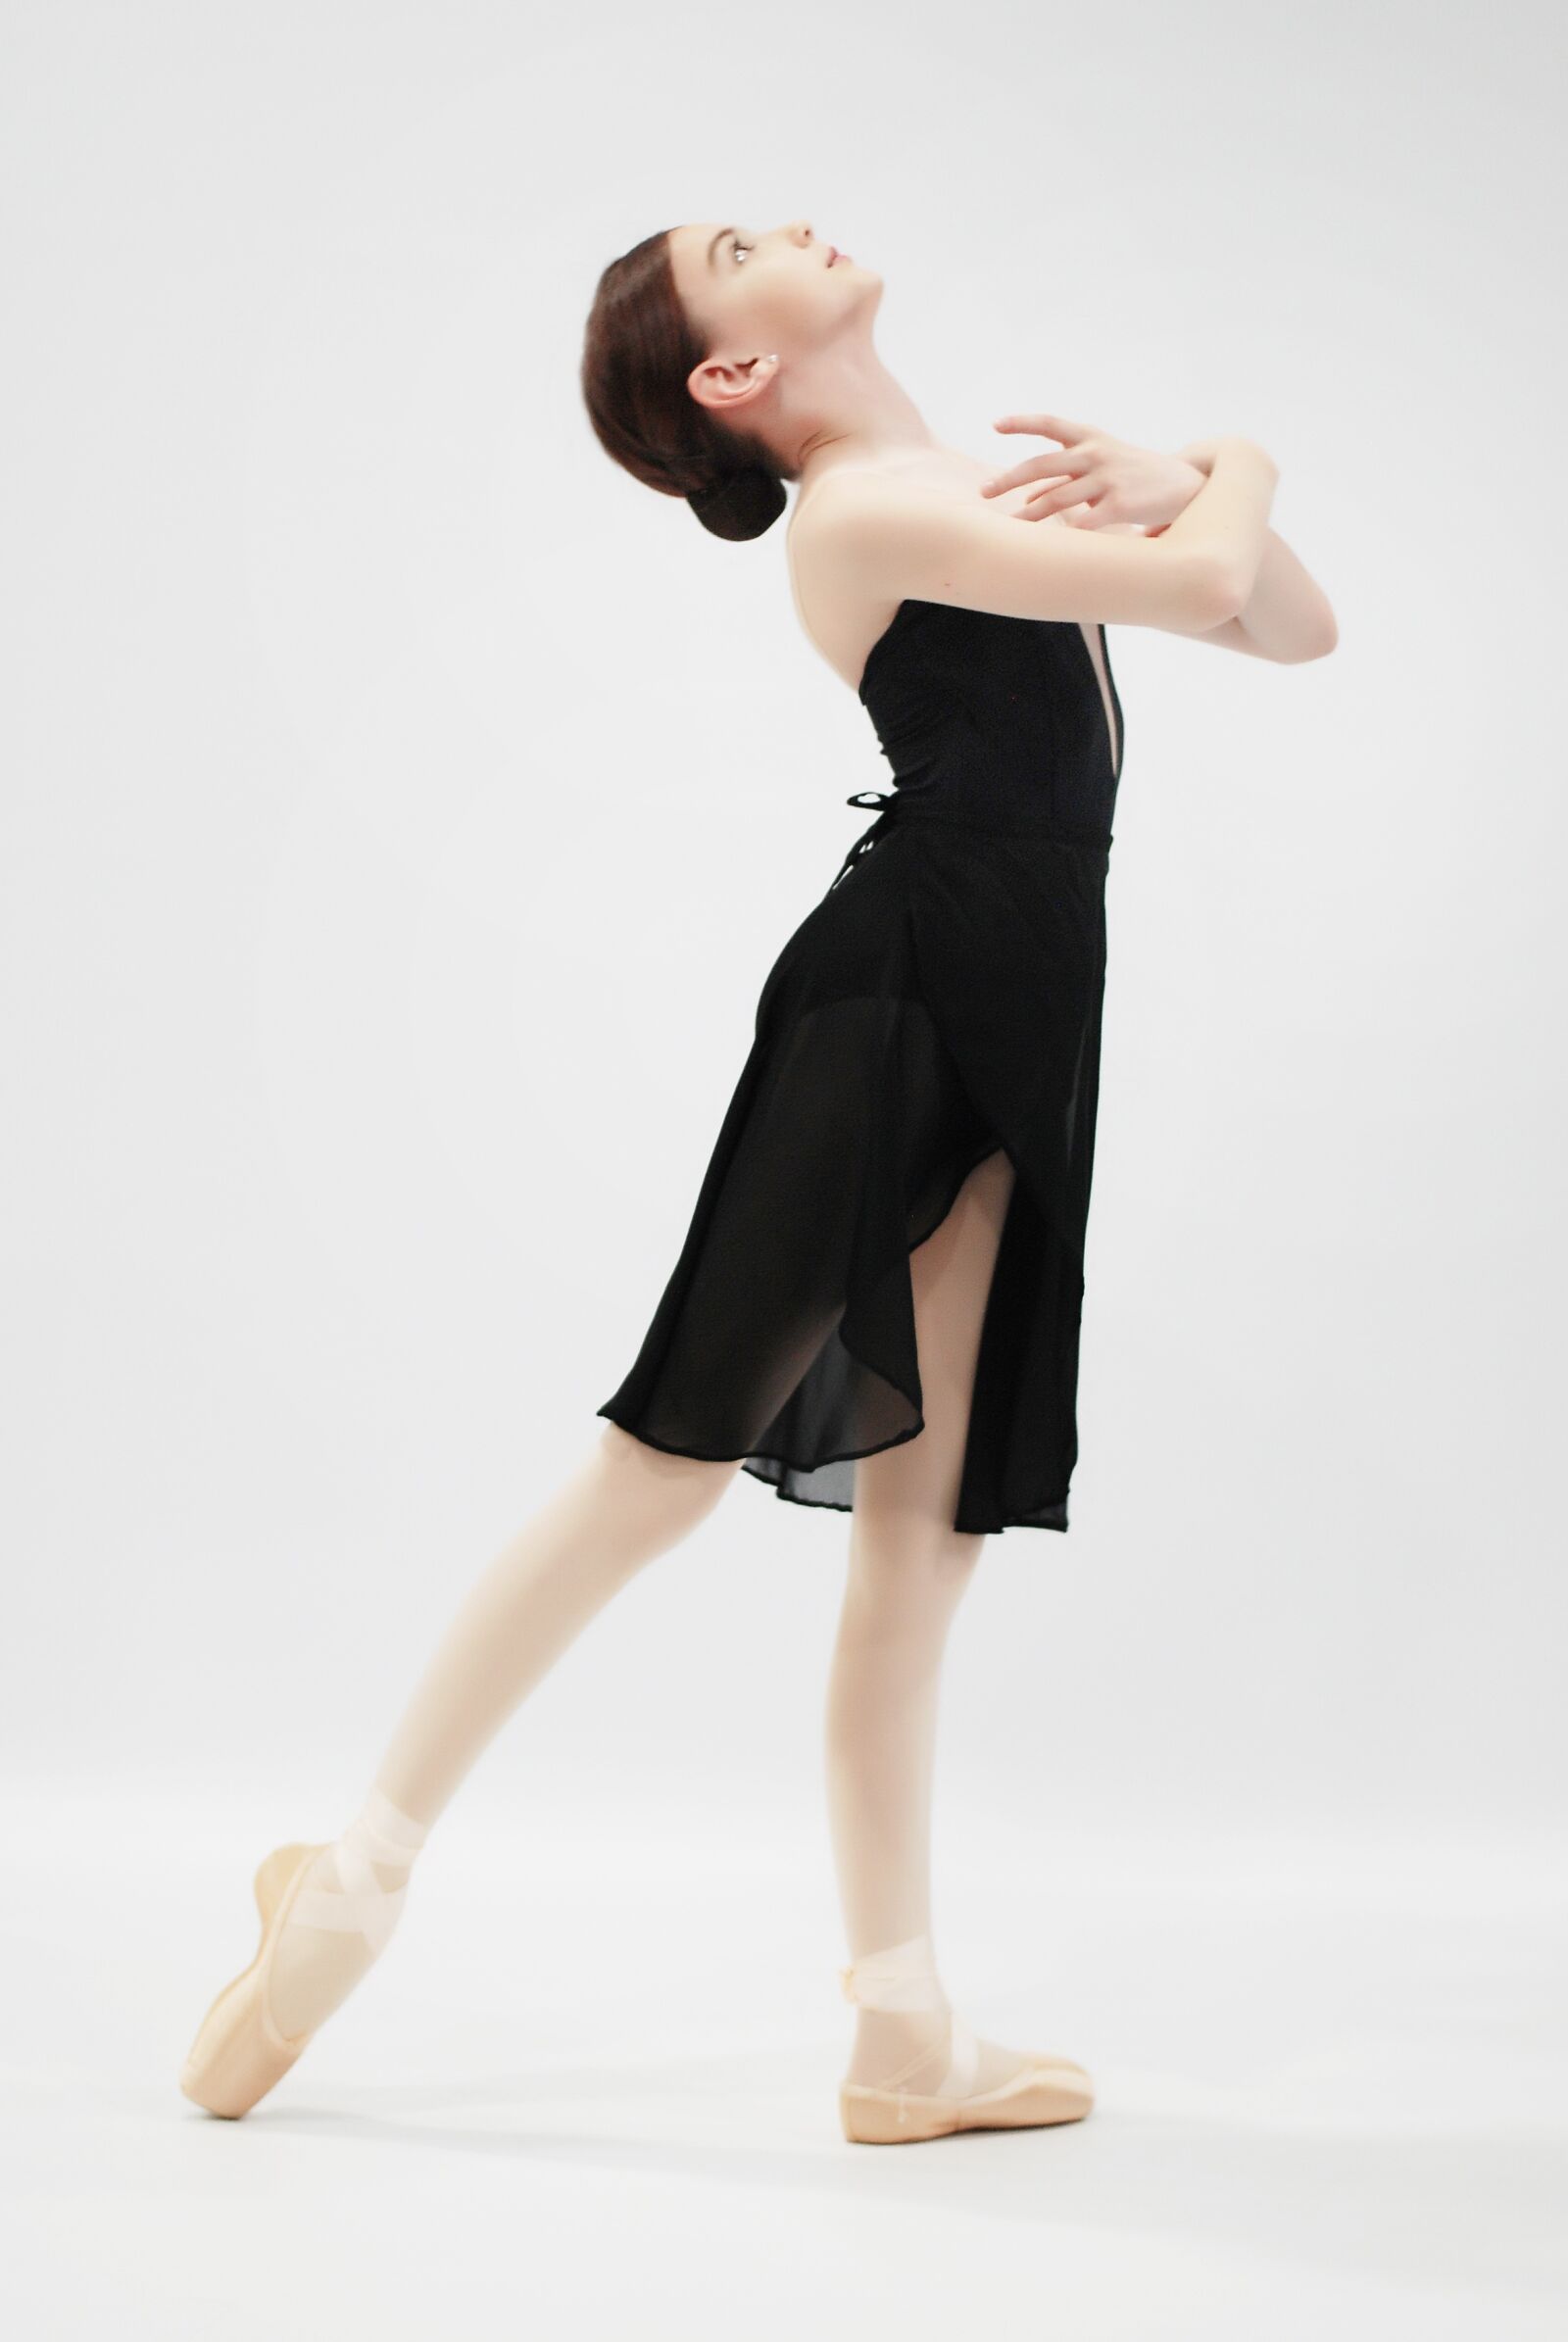 Nikon D80 sample photo. Ballet, ballerina, dance photography